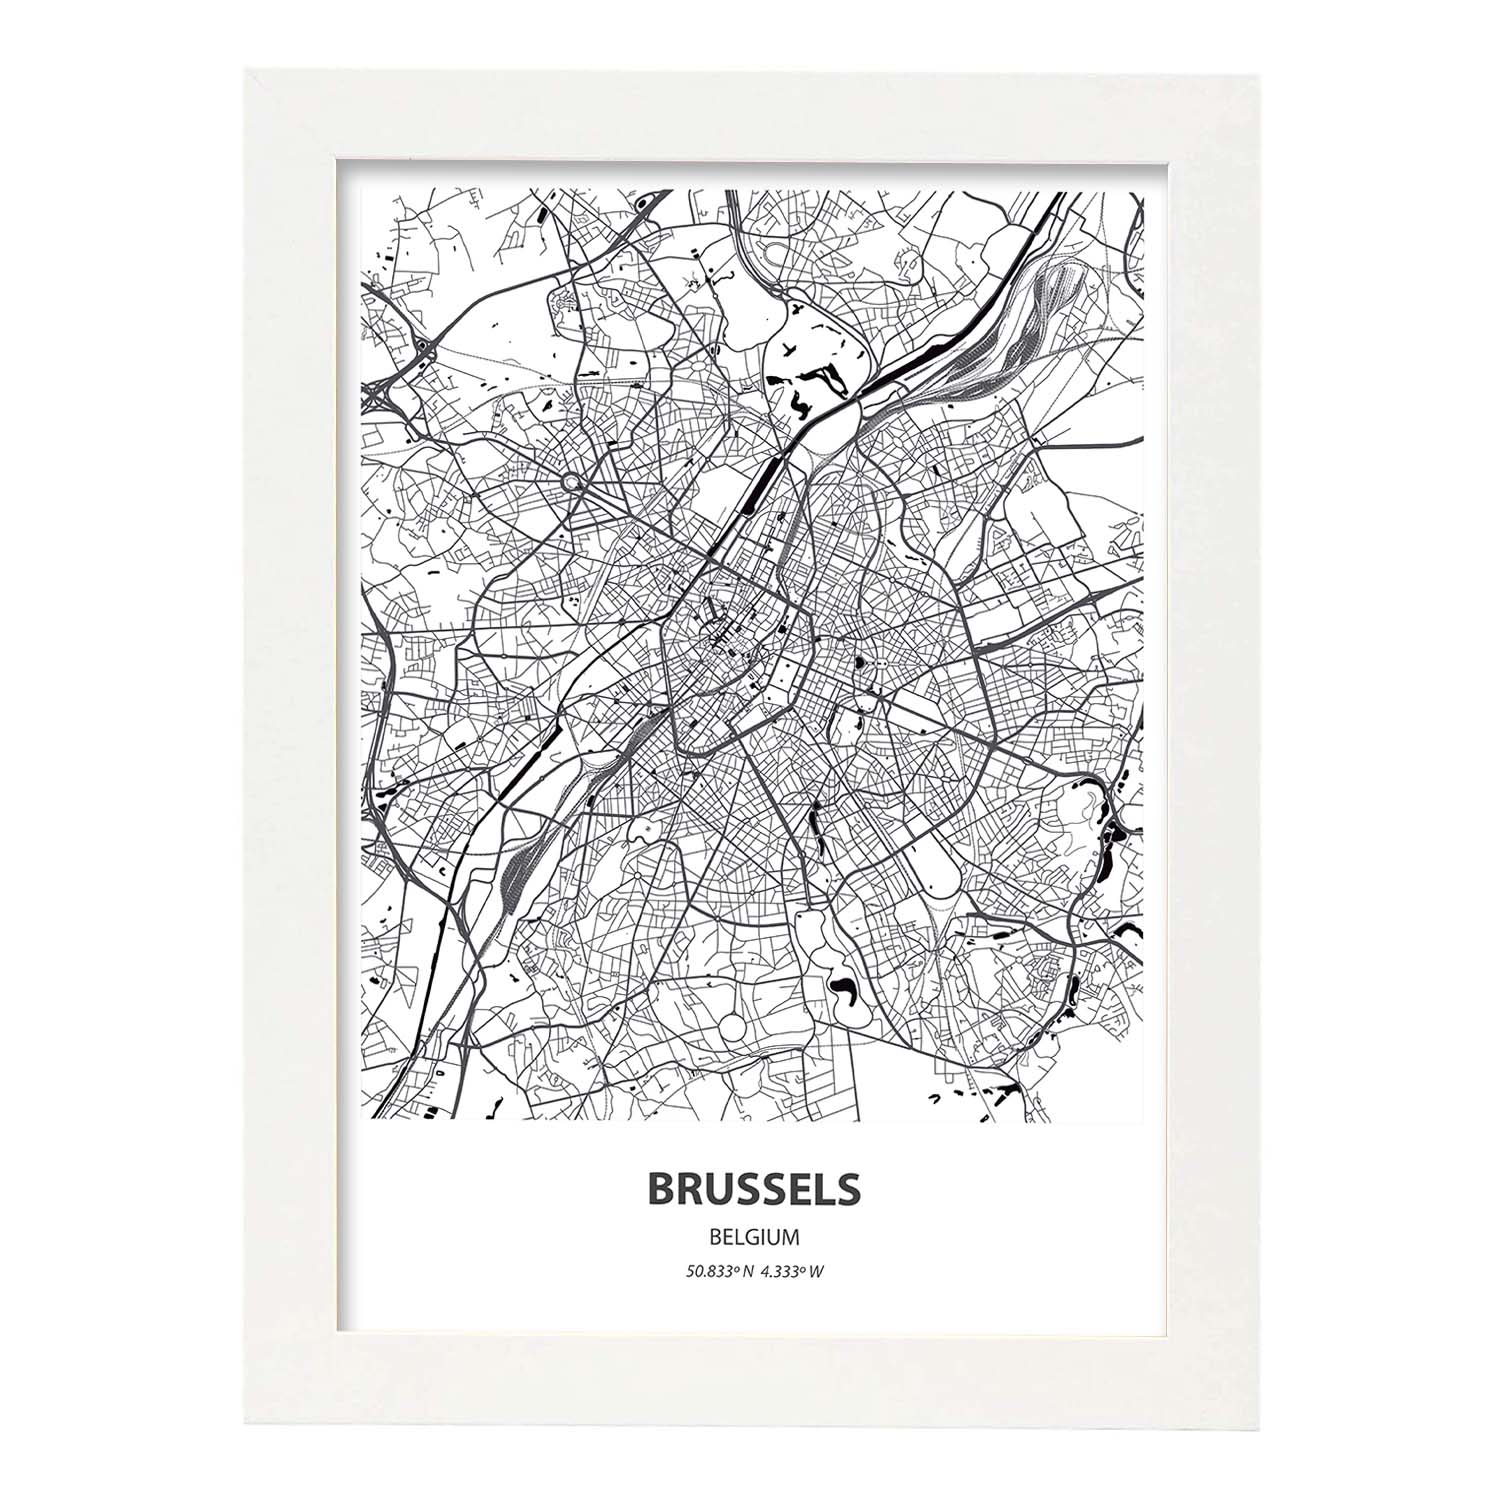 Poster con mapa de Brussels - Belgica. Láminas de ciudades de Holanda y Bélgica con mares y ríos en color negro.-Artwork-Nacnic-A3-Marco Blanco-Nacnic Estudio SL